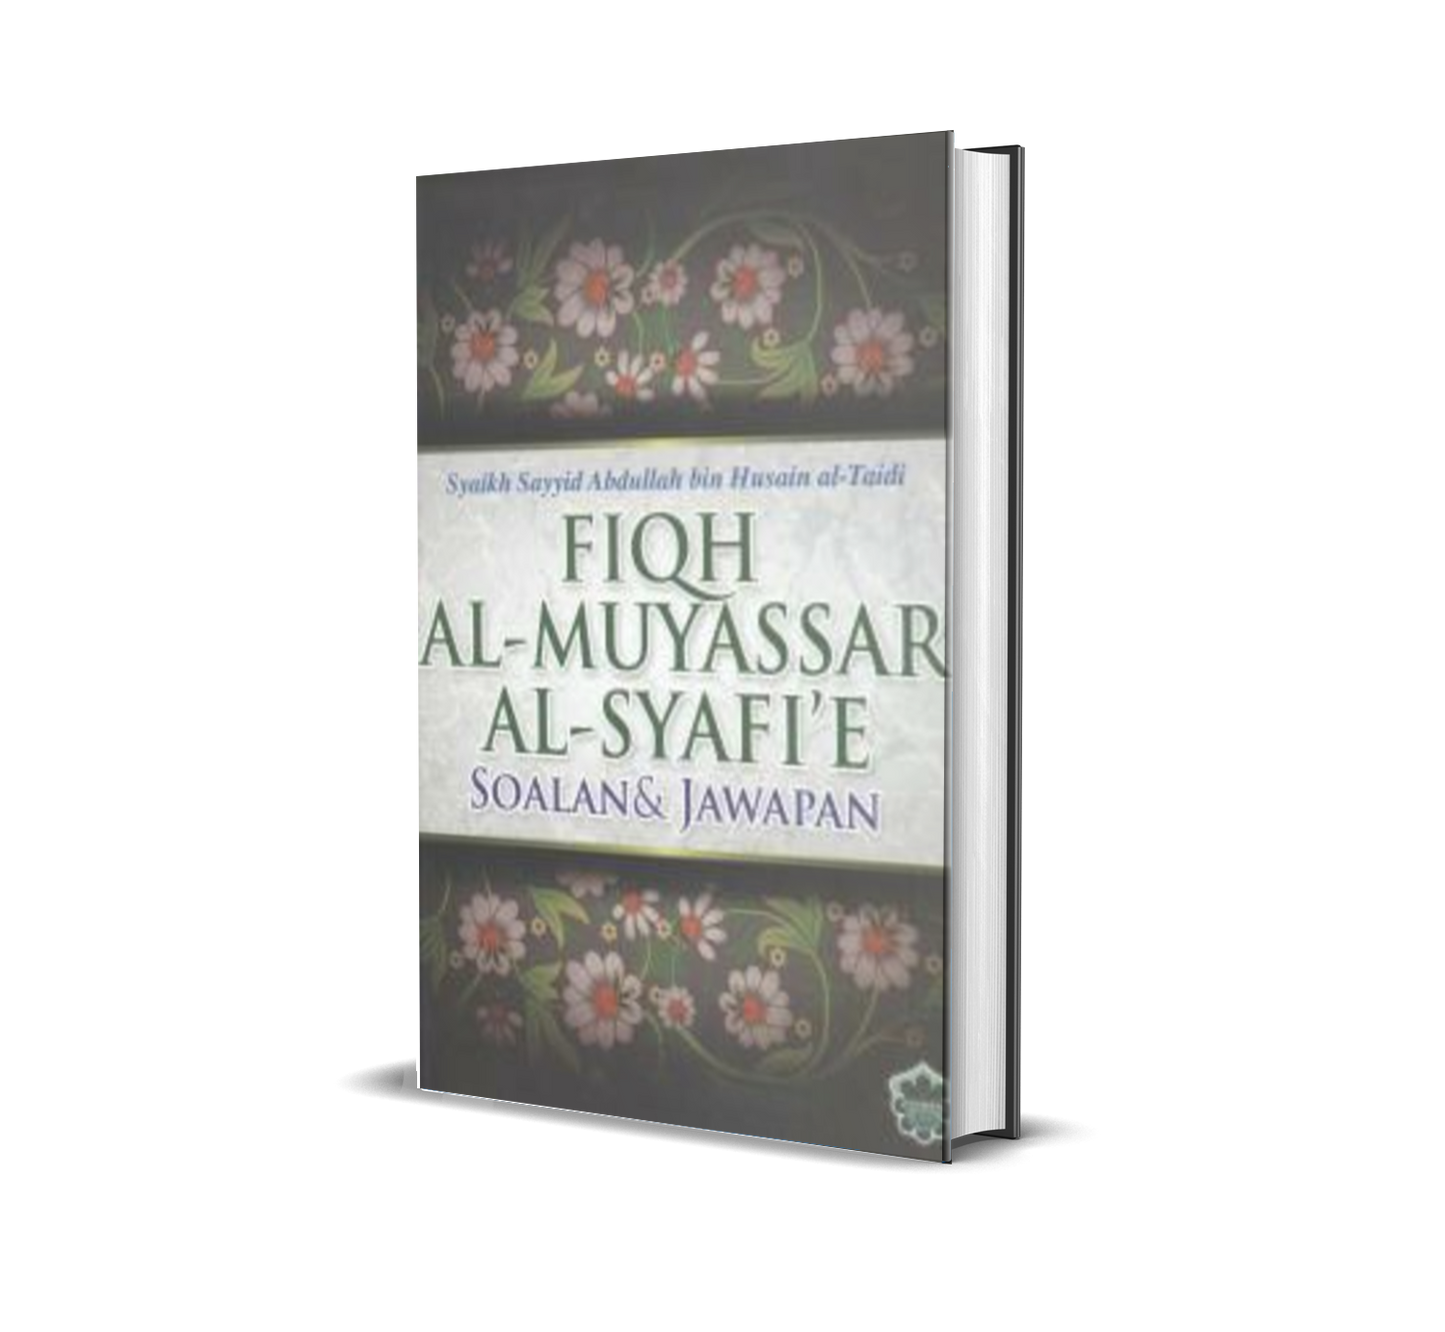 Fiqh Al-Muyassar Al-Syafi'e Soalan & Jawapan